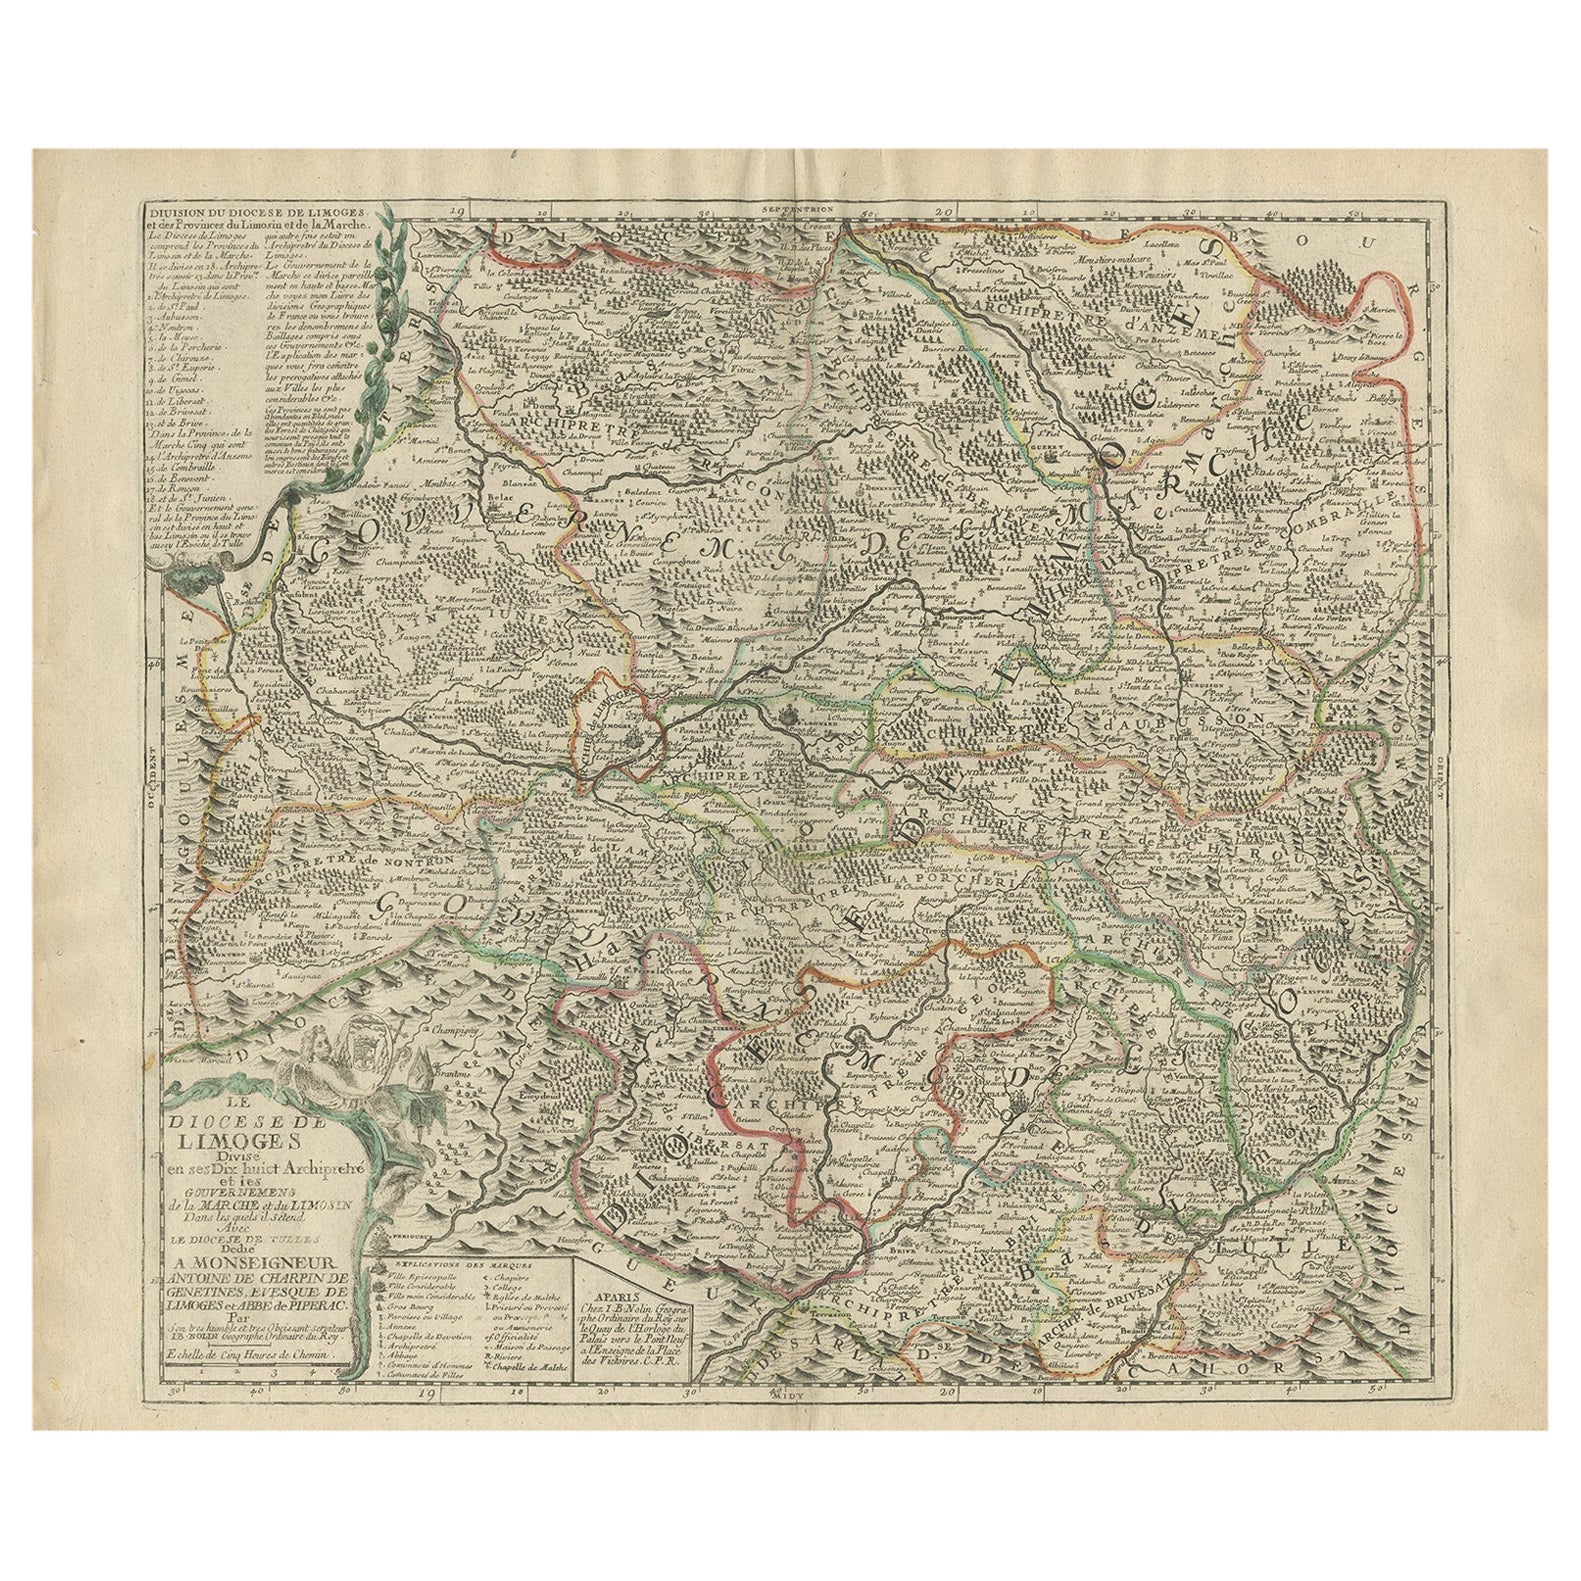 Carte ancienne de la région de Limoges en France, vers 1690